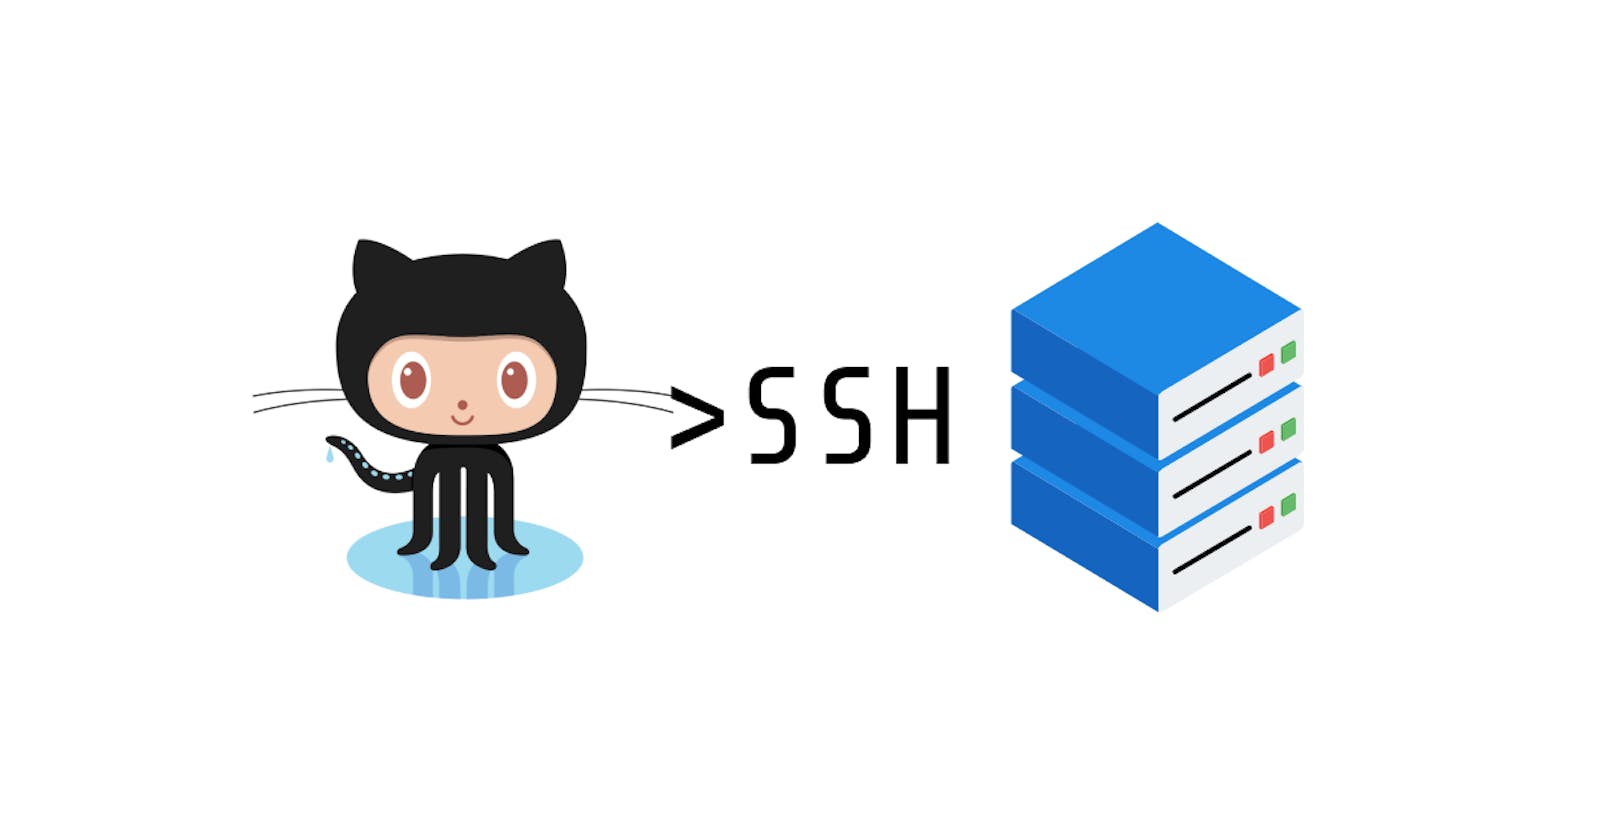 Faça seu push automaticamente com SSH no Github (Linux)